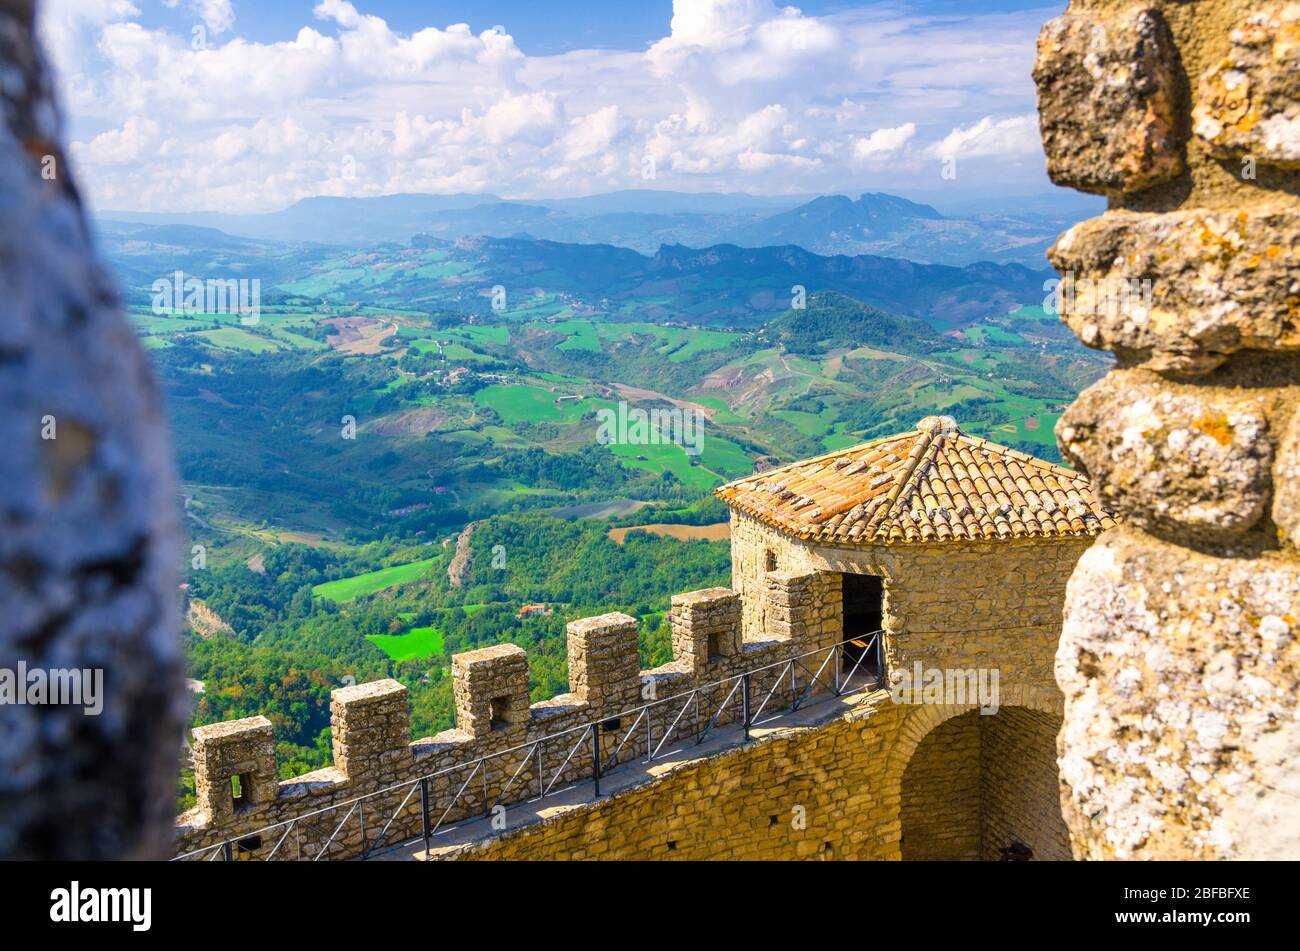 Luftbild oben panoramic view Landschaft mit Tal, grünen Hügeln, Feldern, Dörfern der Republik San Marino Vorstadt, blauen Himmel weißen Wolken zurück gro Stockfoto